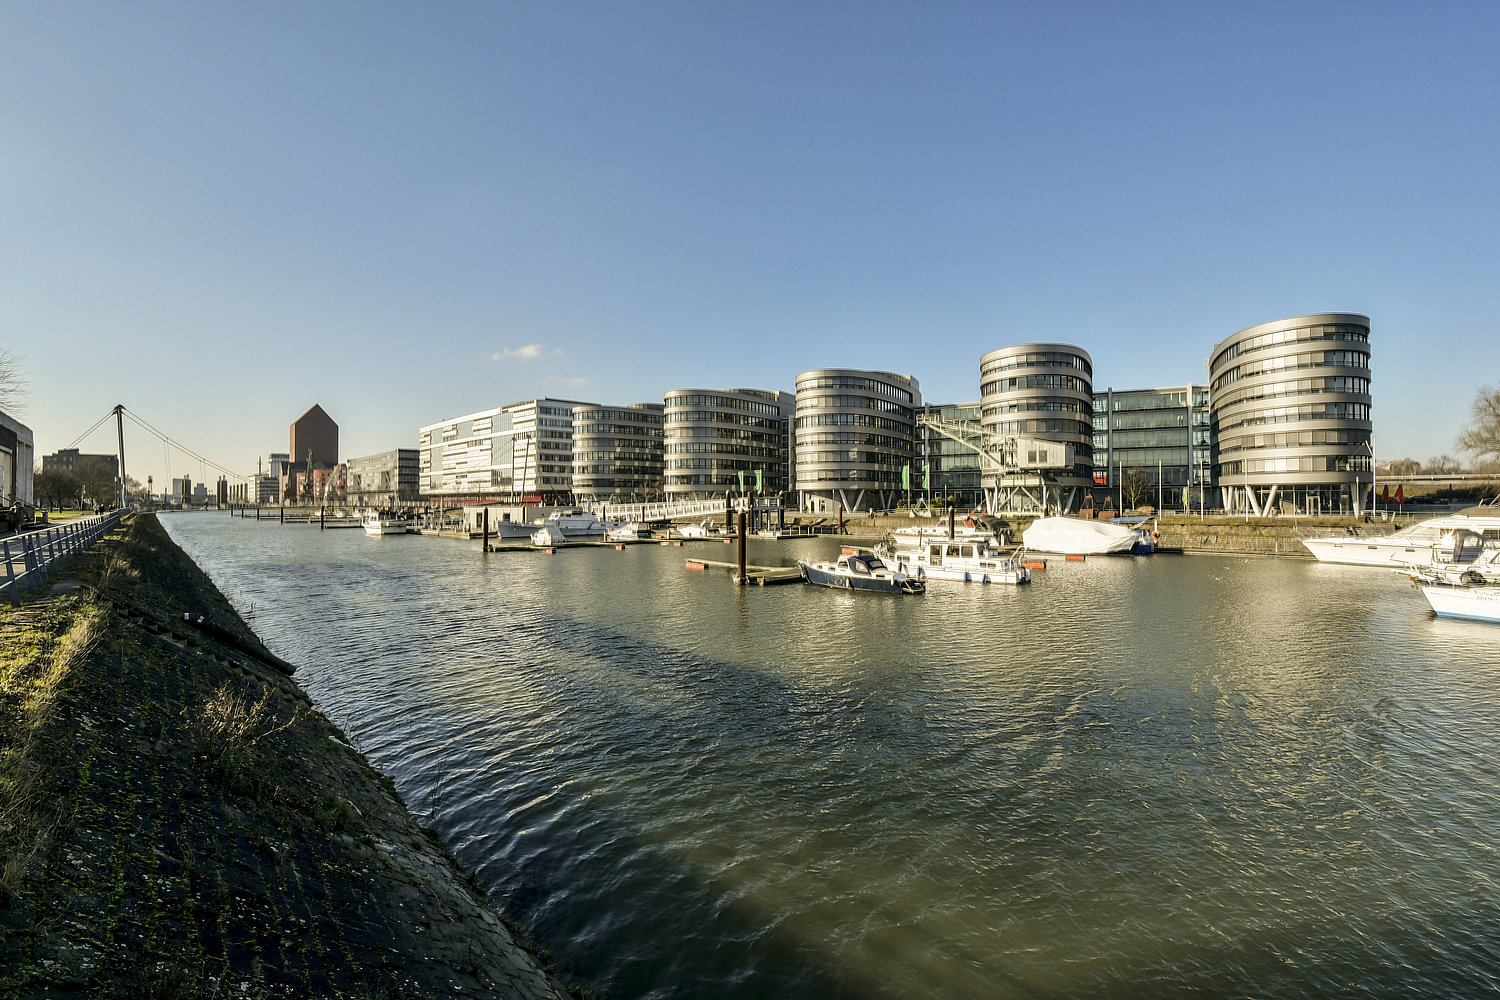 Innenhafen Duisburg - Blick auf den unteren Teil mit Marina